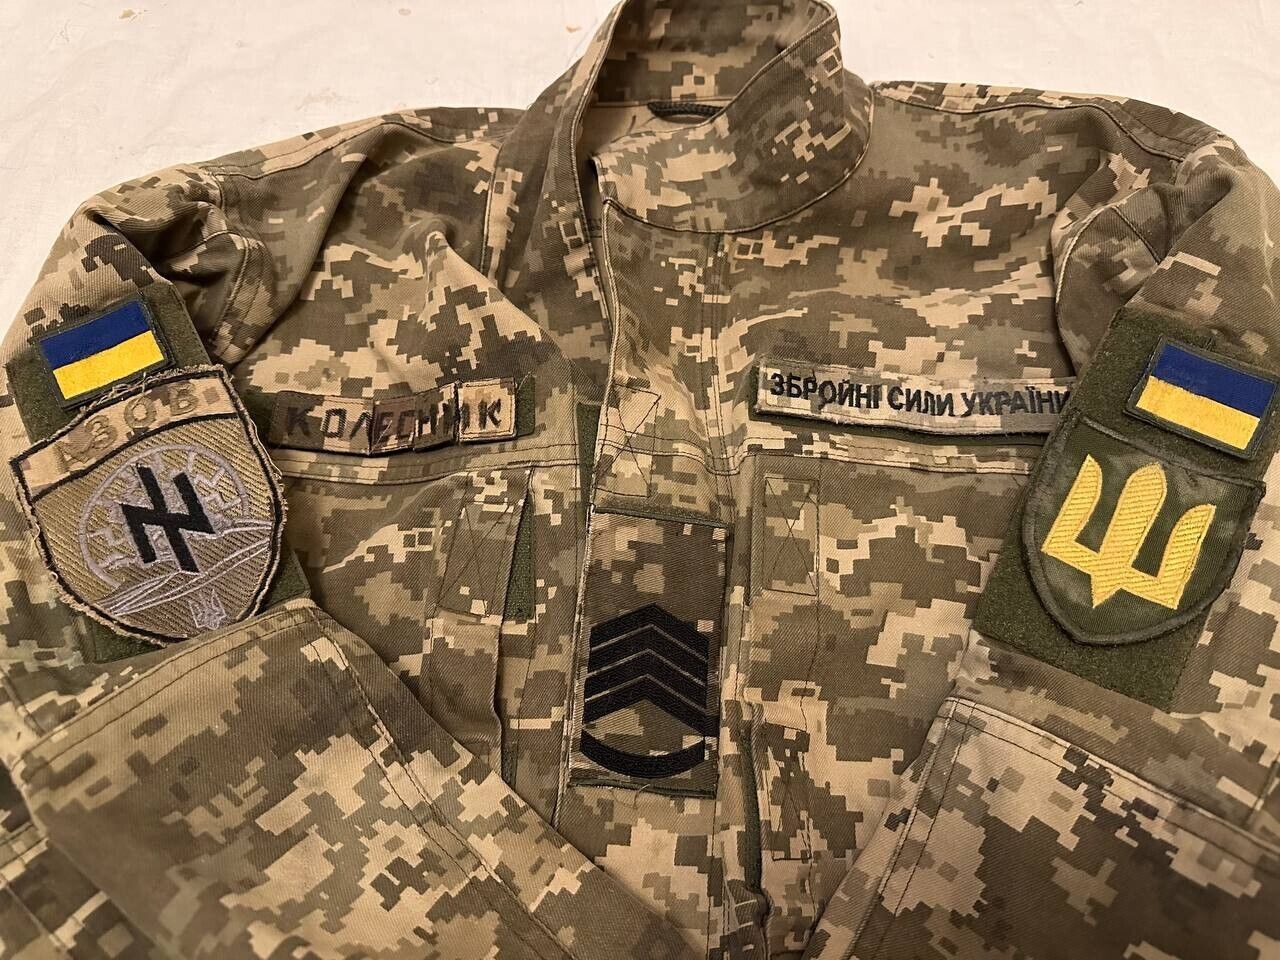 Ukrainian Army Jacket A Z O Battalion Uniform Patches Chevrons Flag Hat Pants